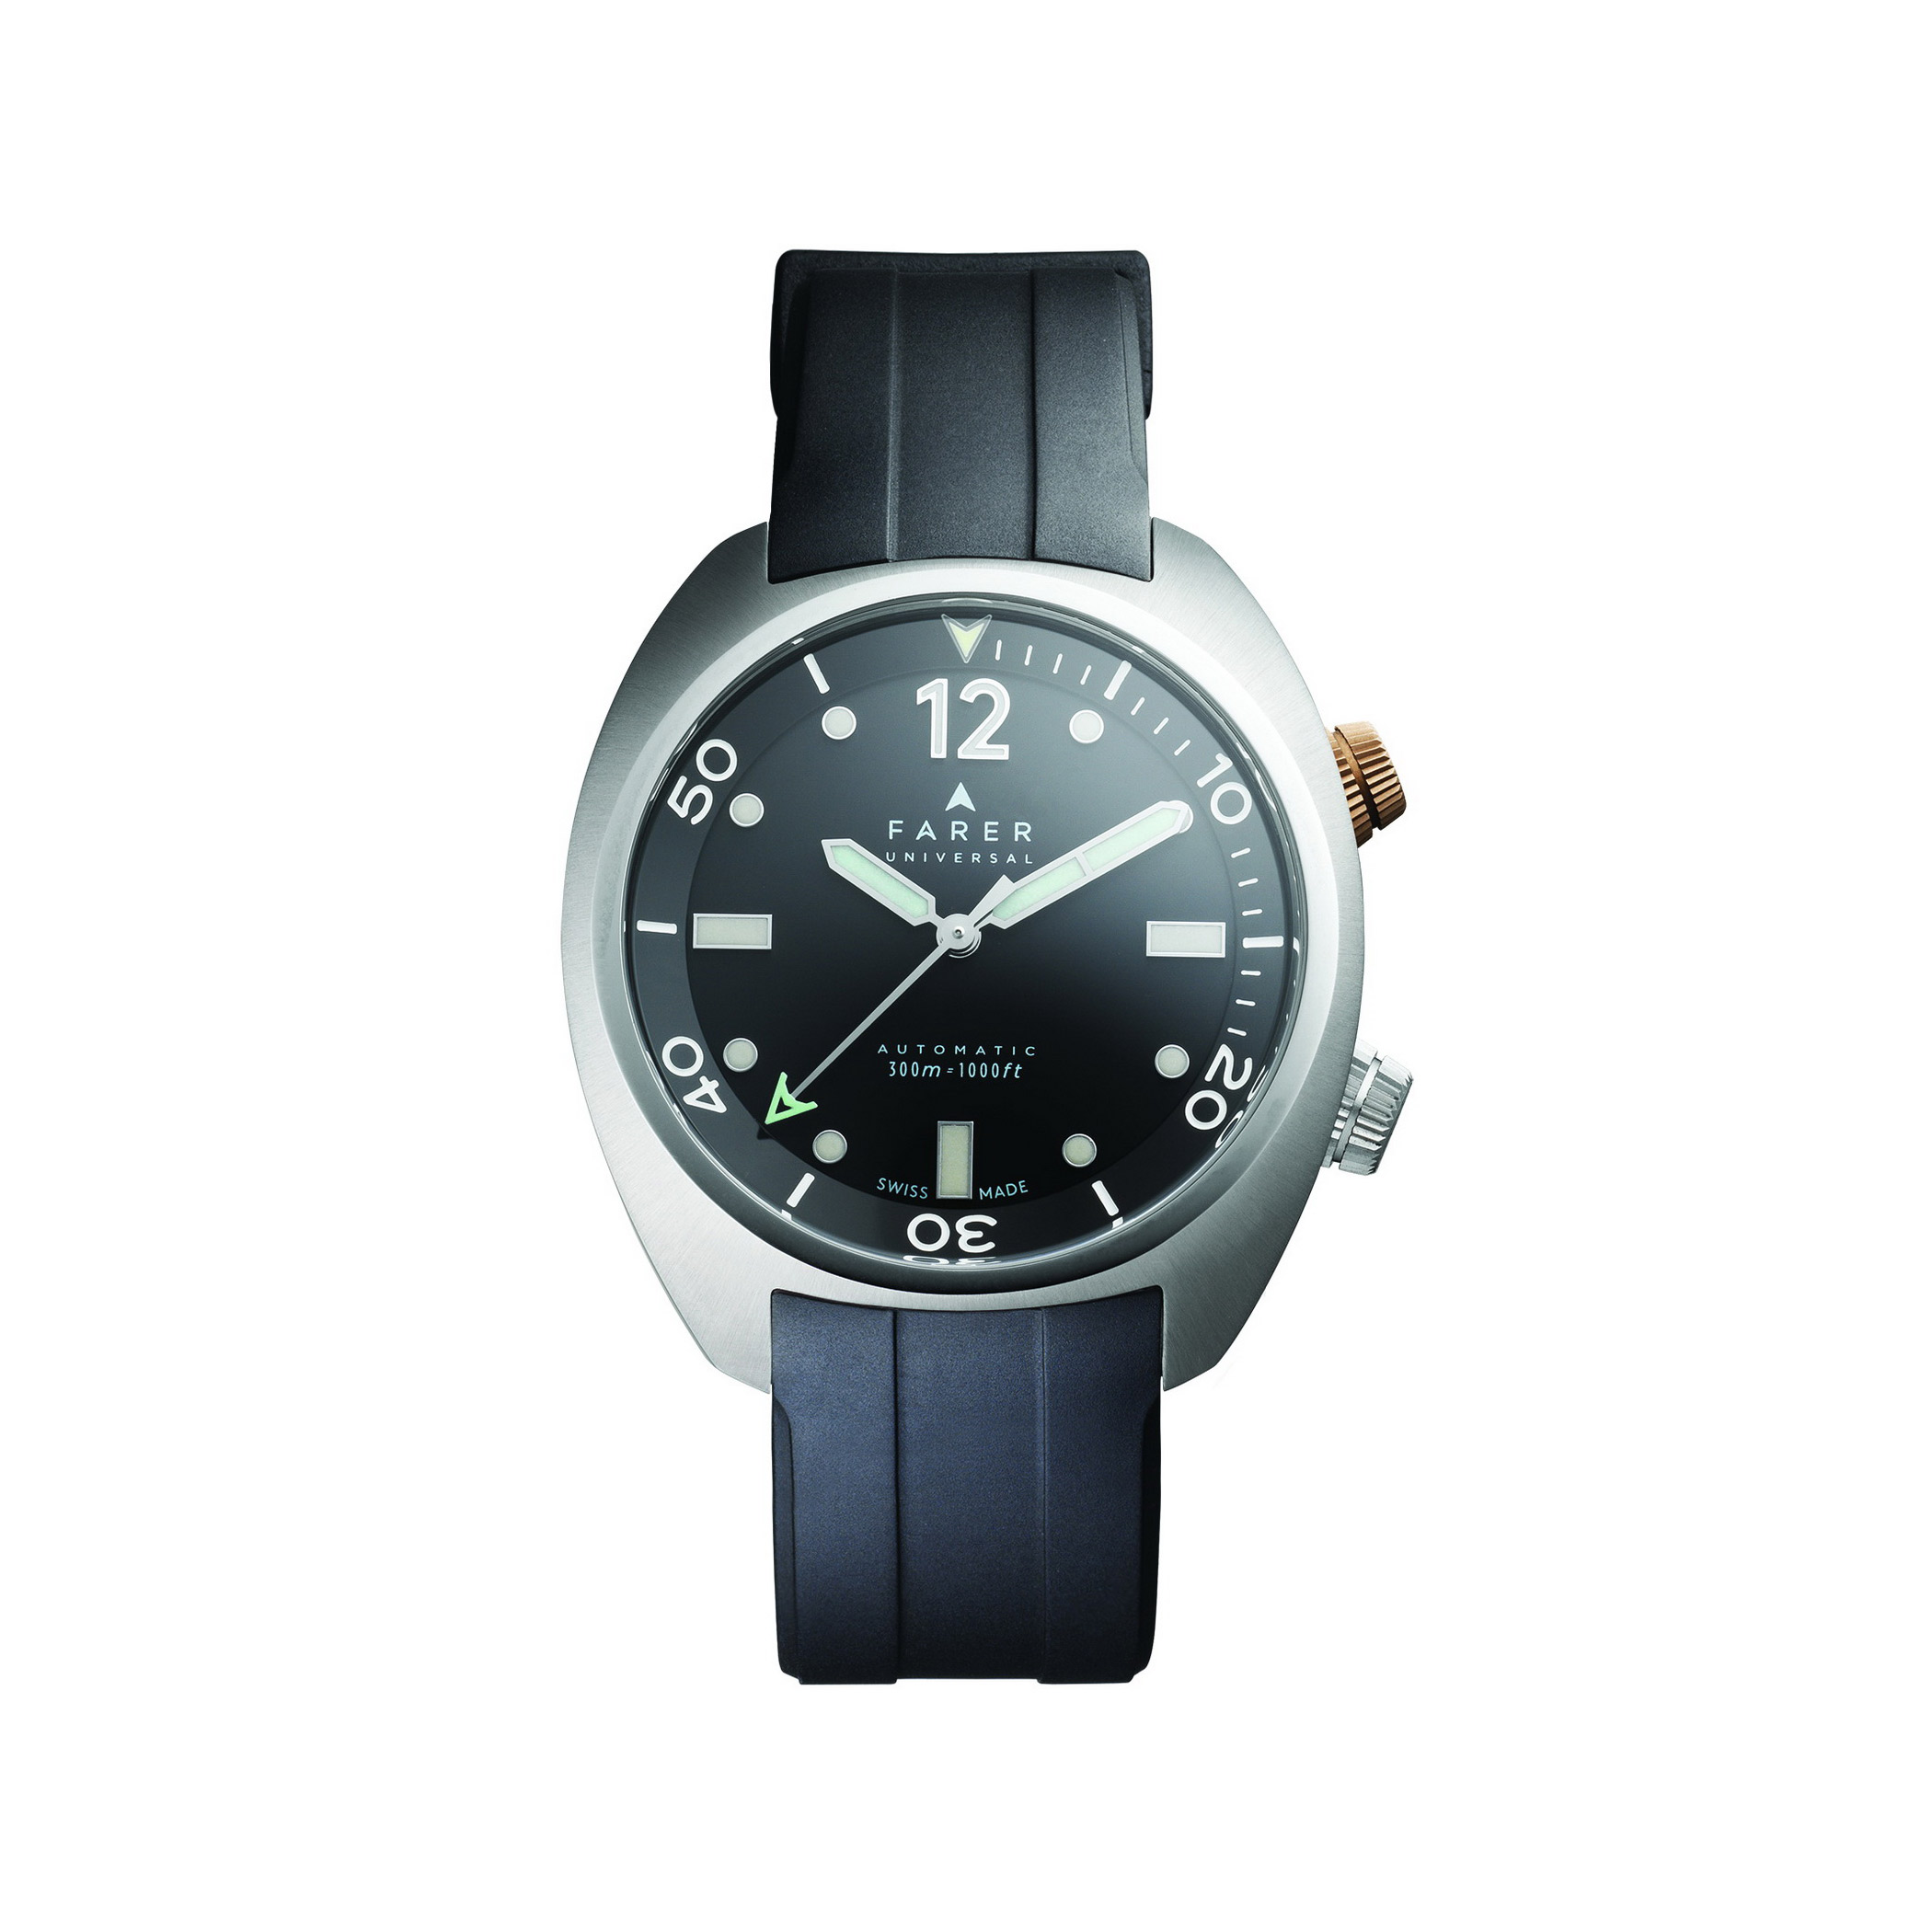 Farer's Endeavour Titanium Aqua Compressor automatic watch, front view